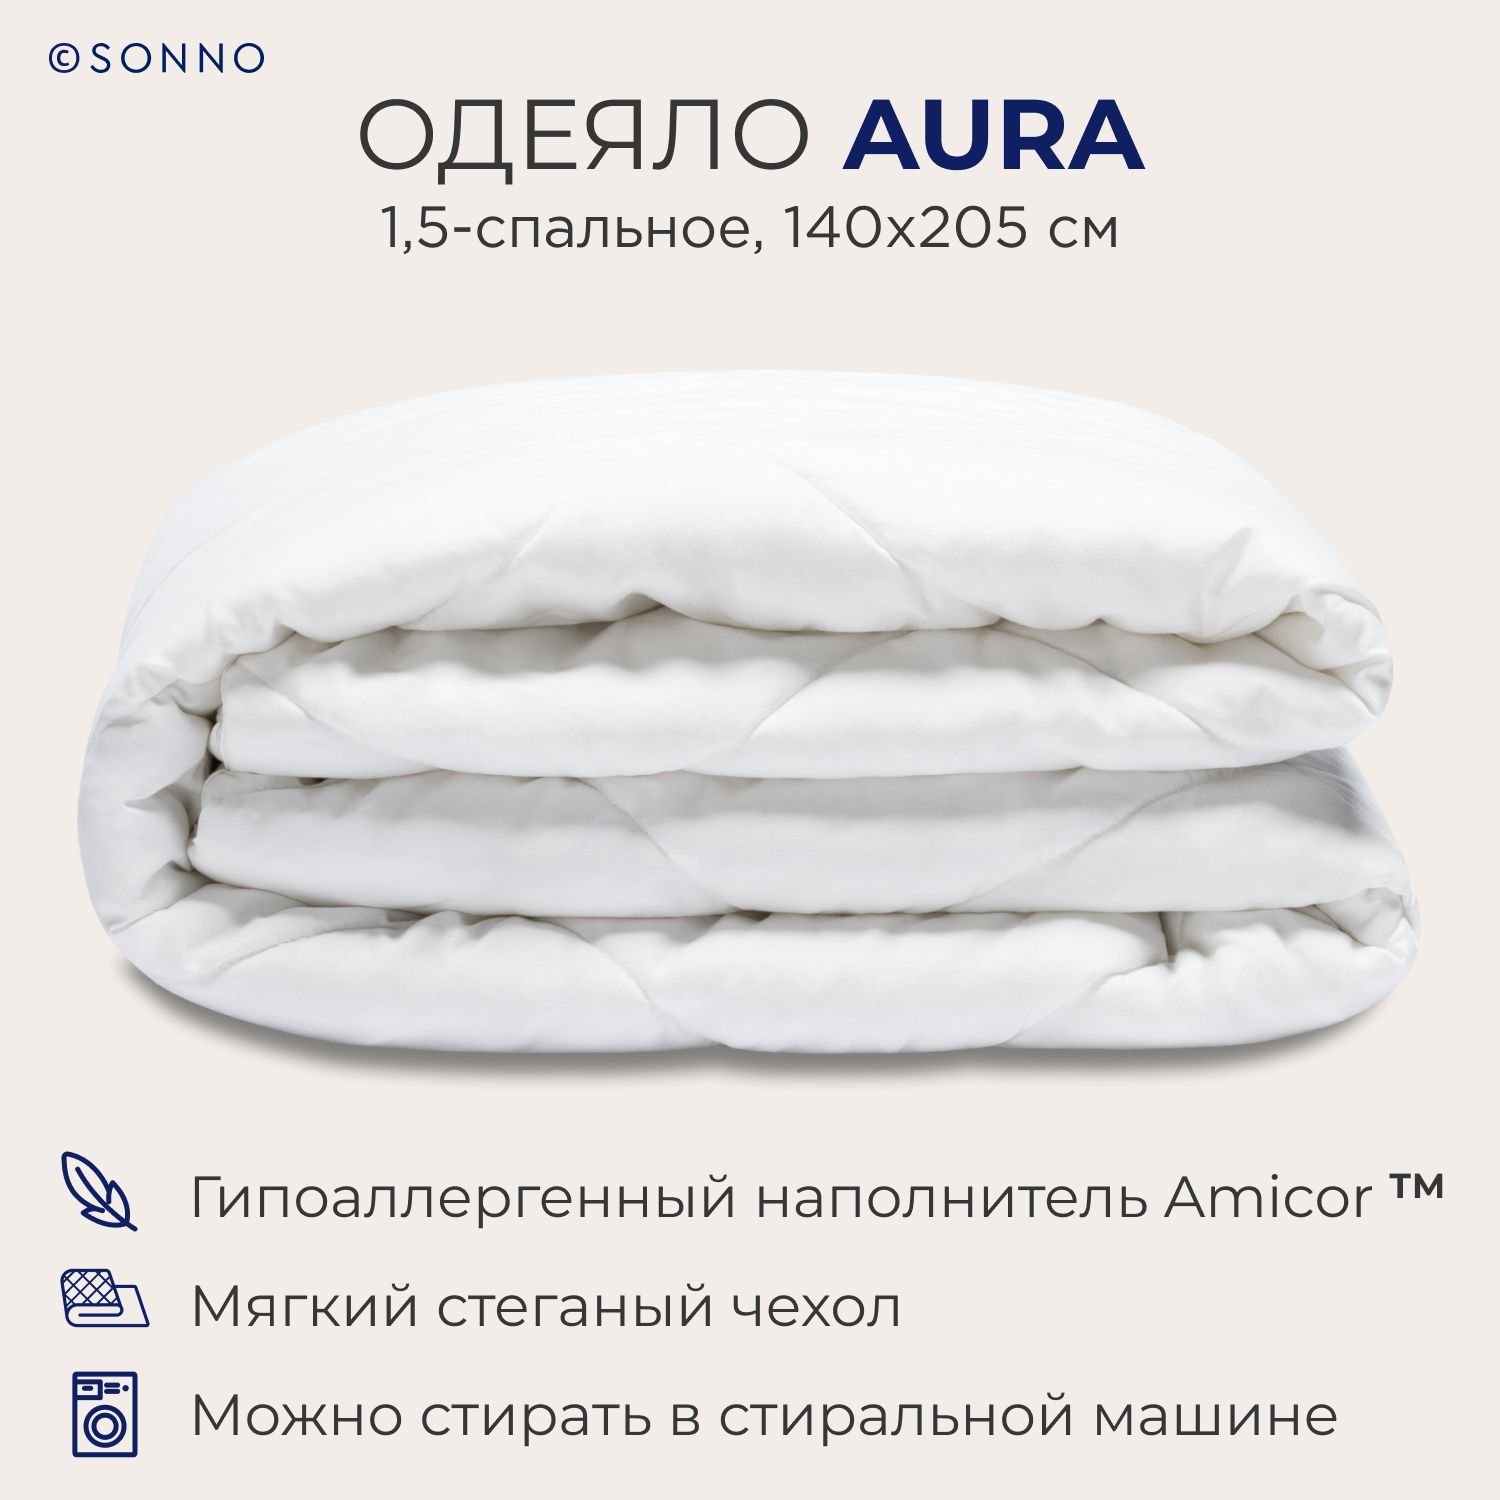 Одеяло SONNO AURA 1,5-спальное, 140х205см, всесезонное, стеганое, цвет Ослепительно белый